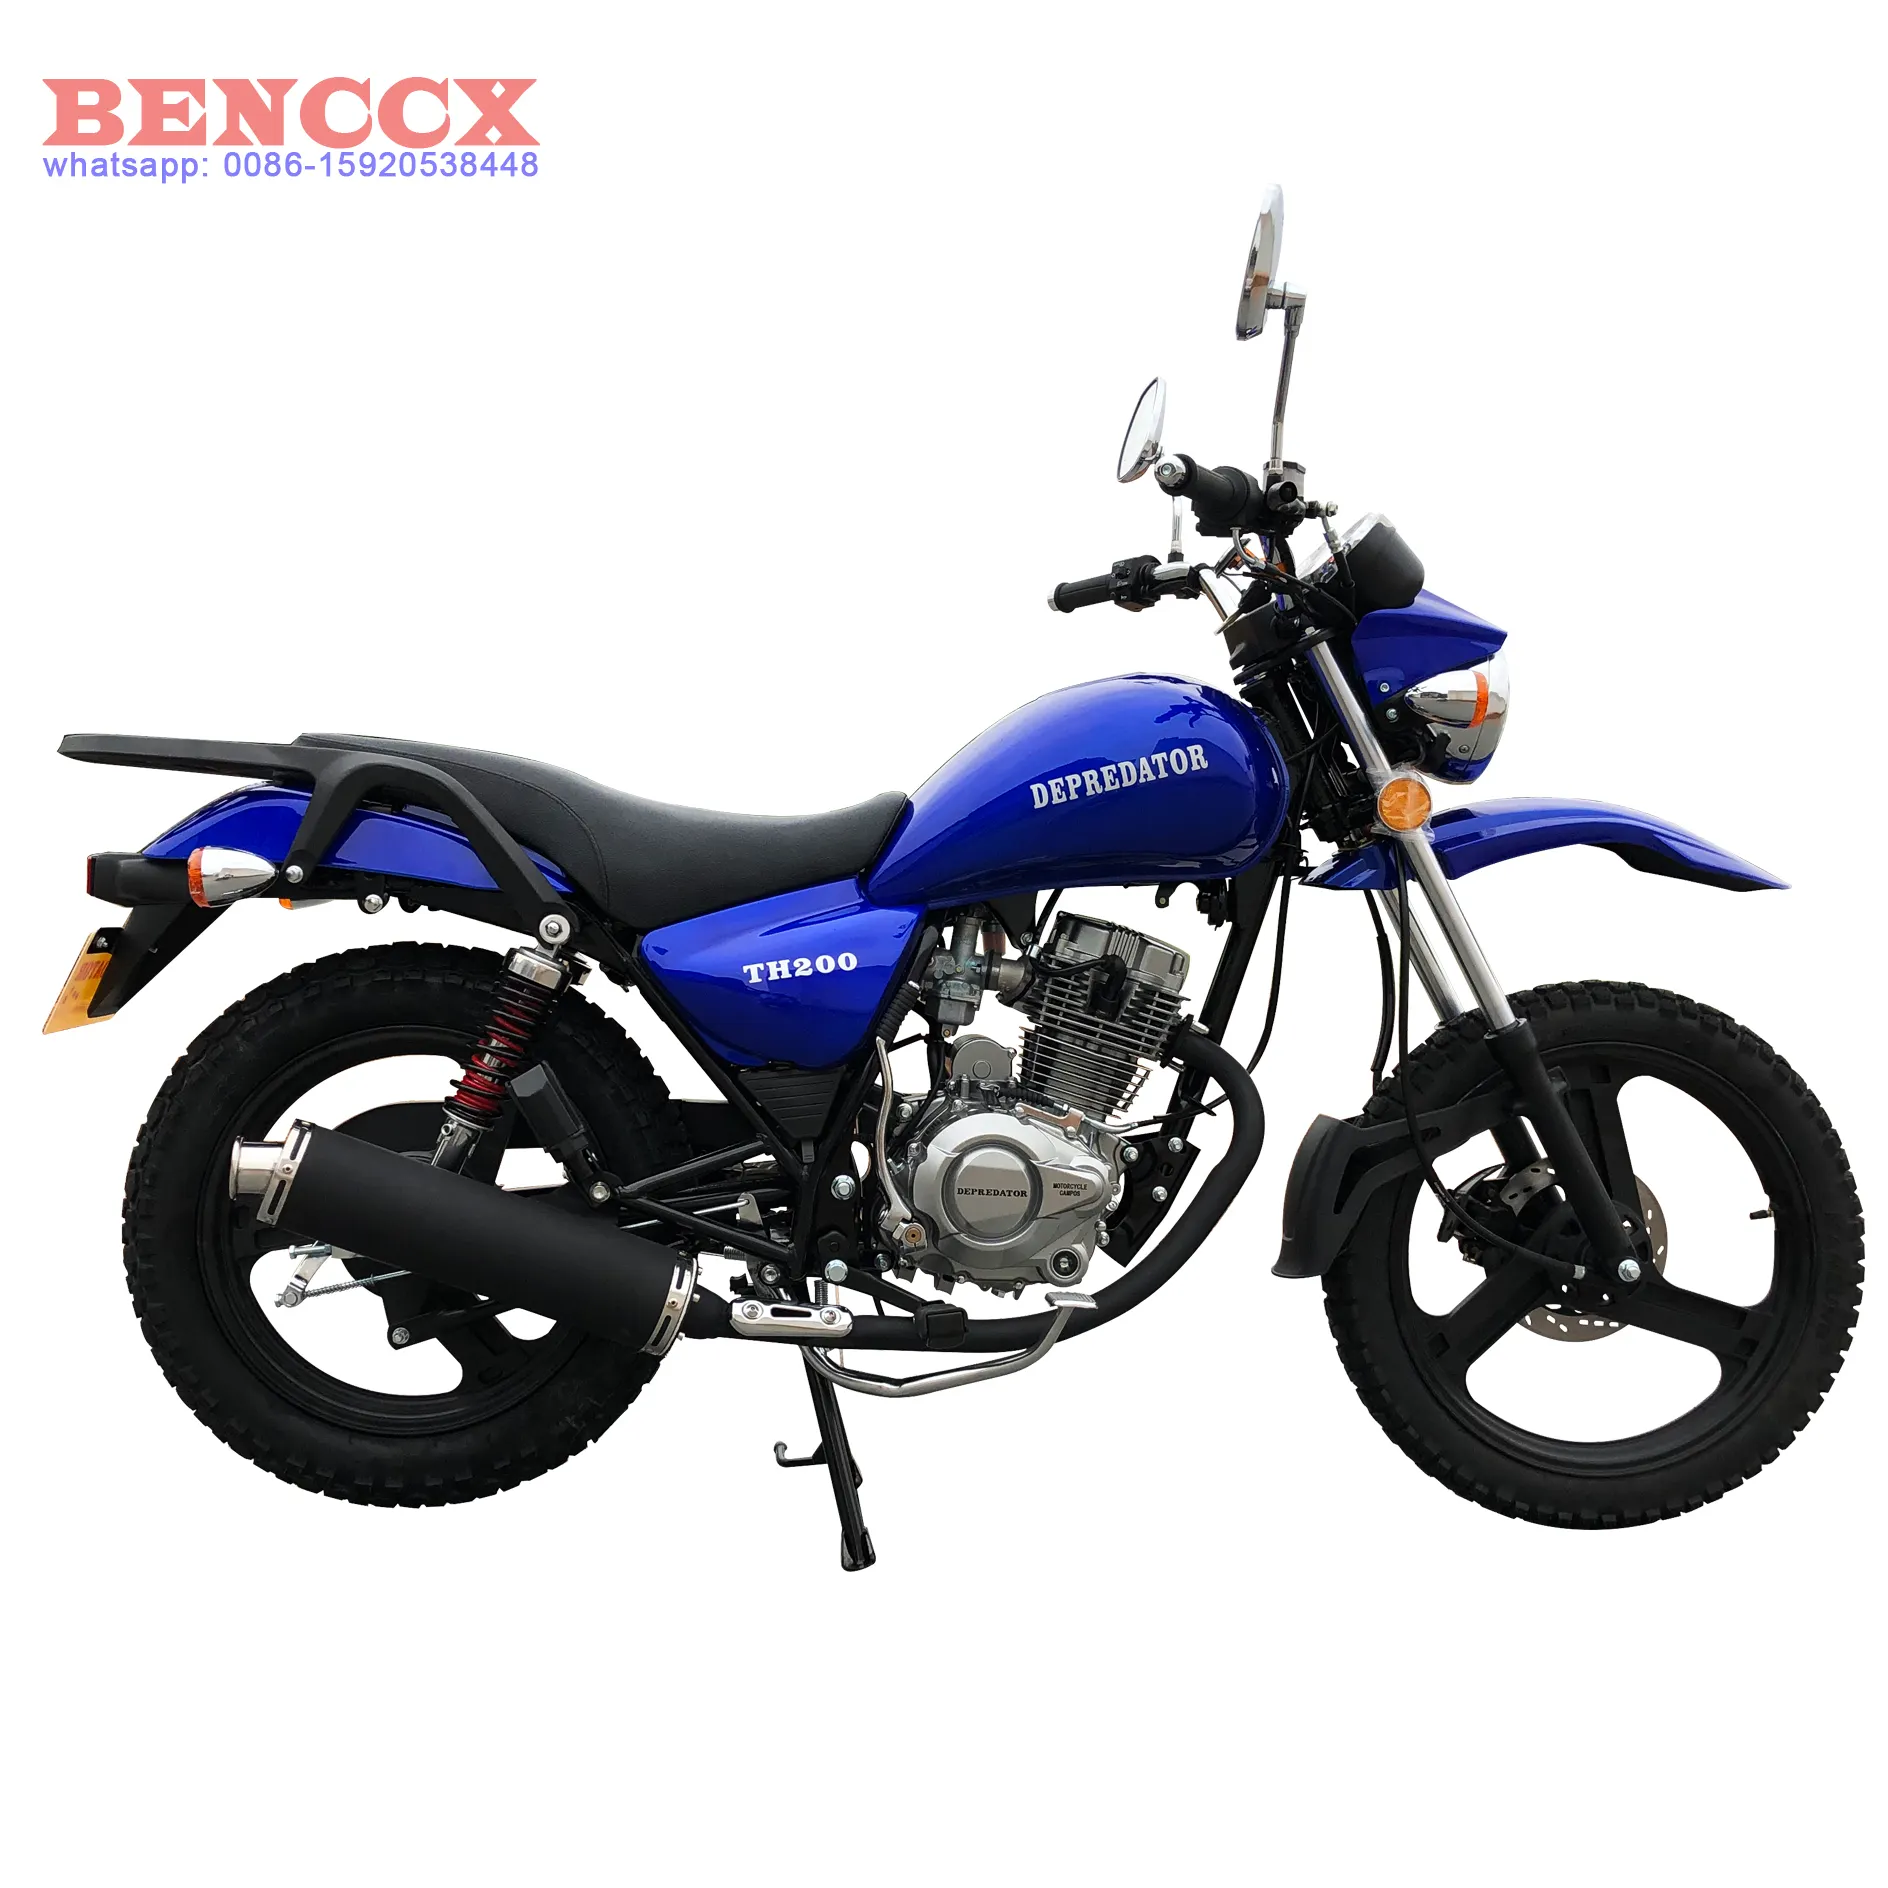 BENCCX-Motor para motocicleta, CG, CG125, CG150, GN, GN125, HJ125, QM150, TH200, 125cc, 150cc, 200cc, otras motocicletas